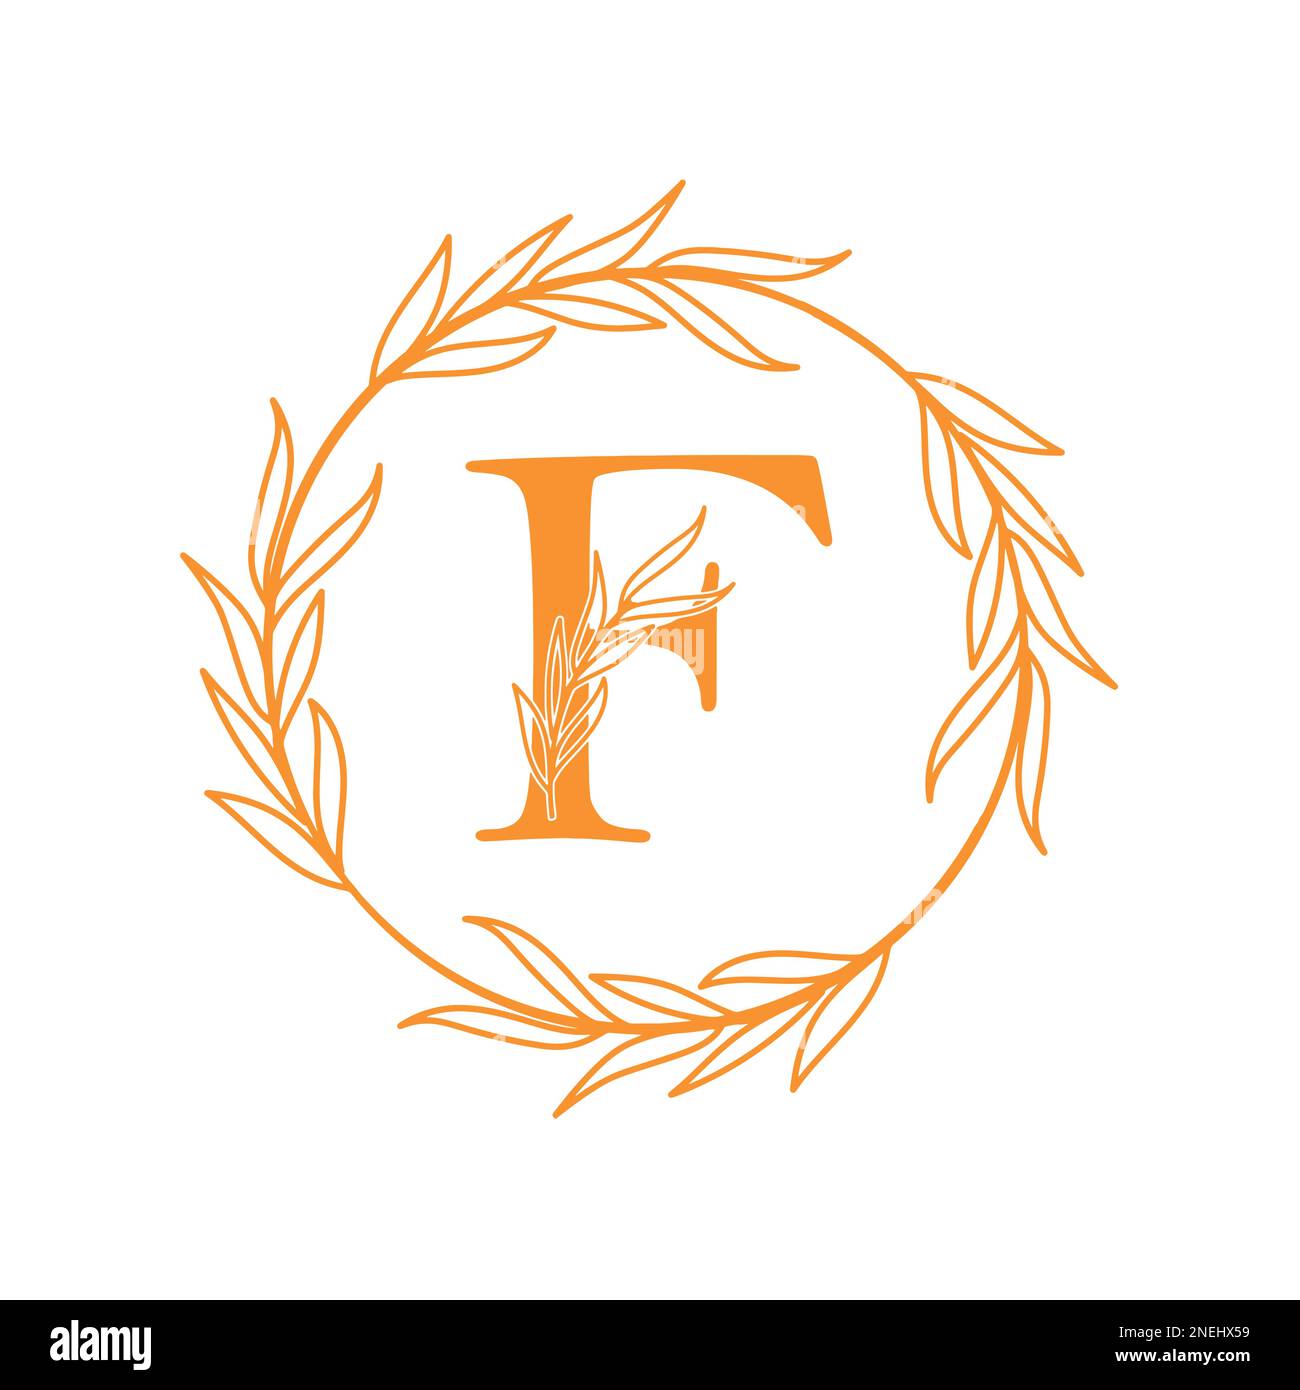 f letter brand logo vector design Stock Vector